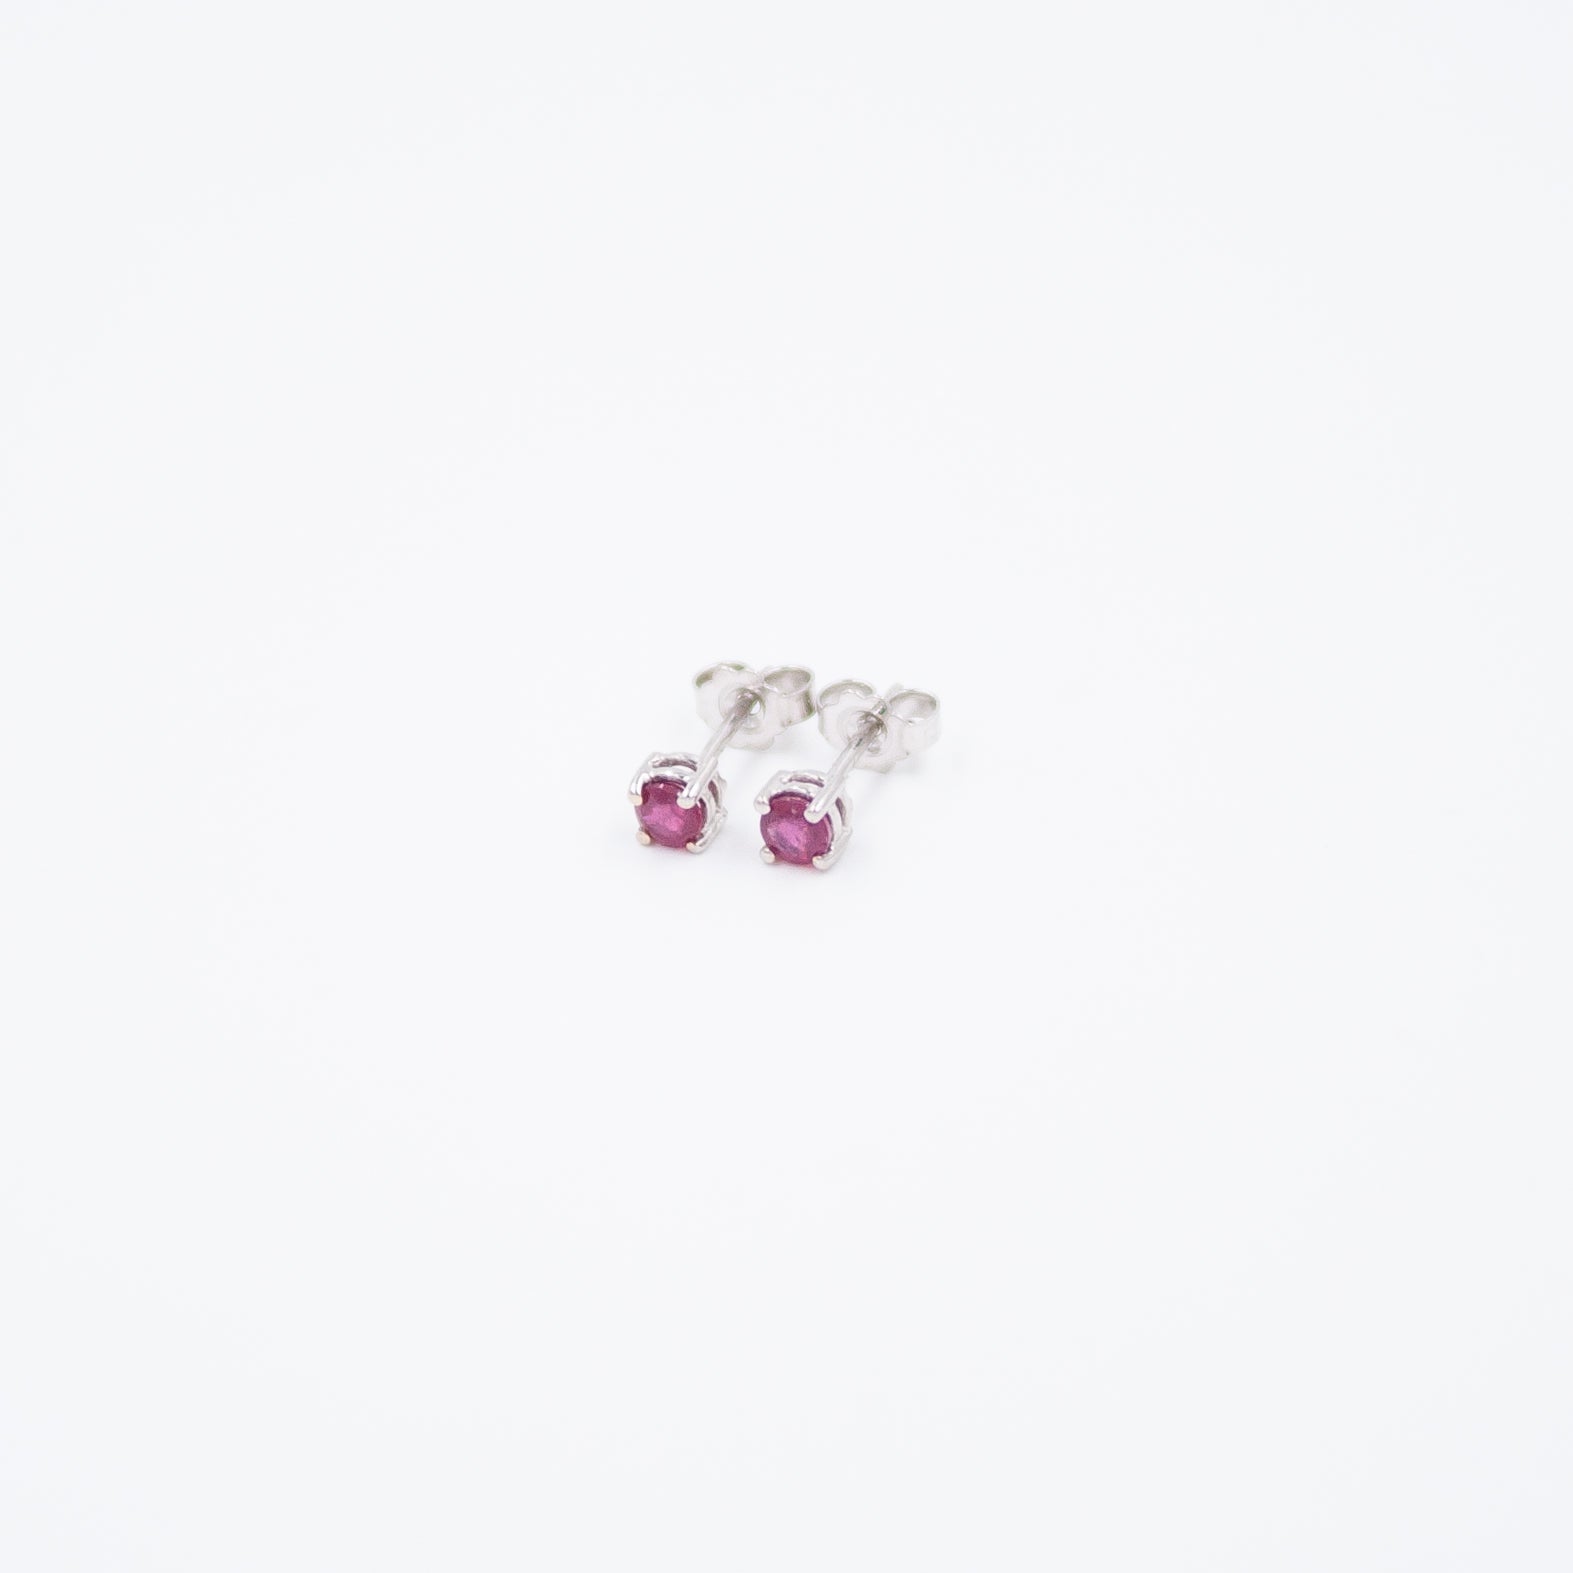 Spotlight earrings with ruby